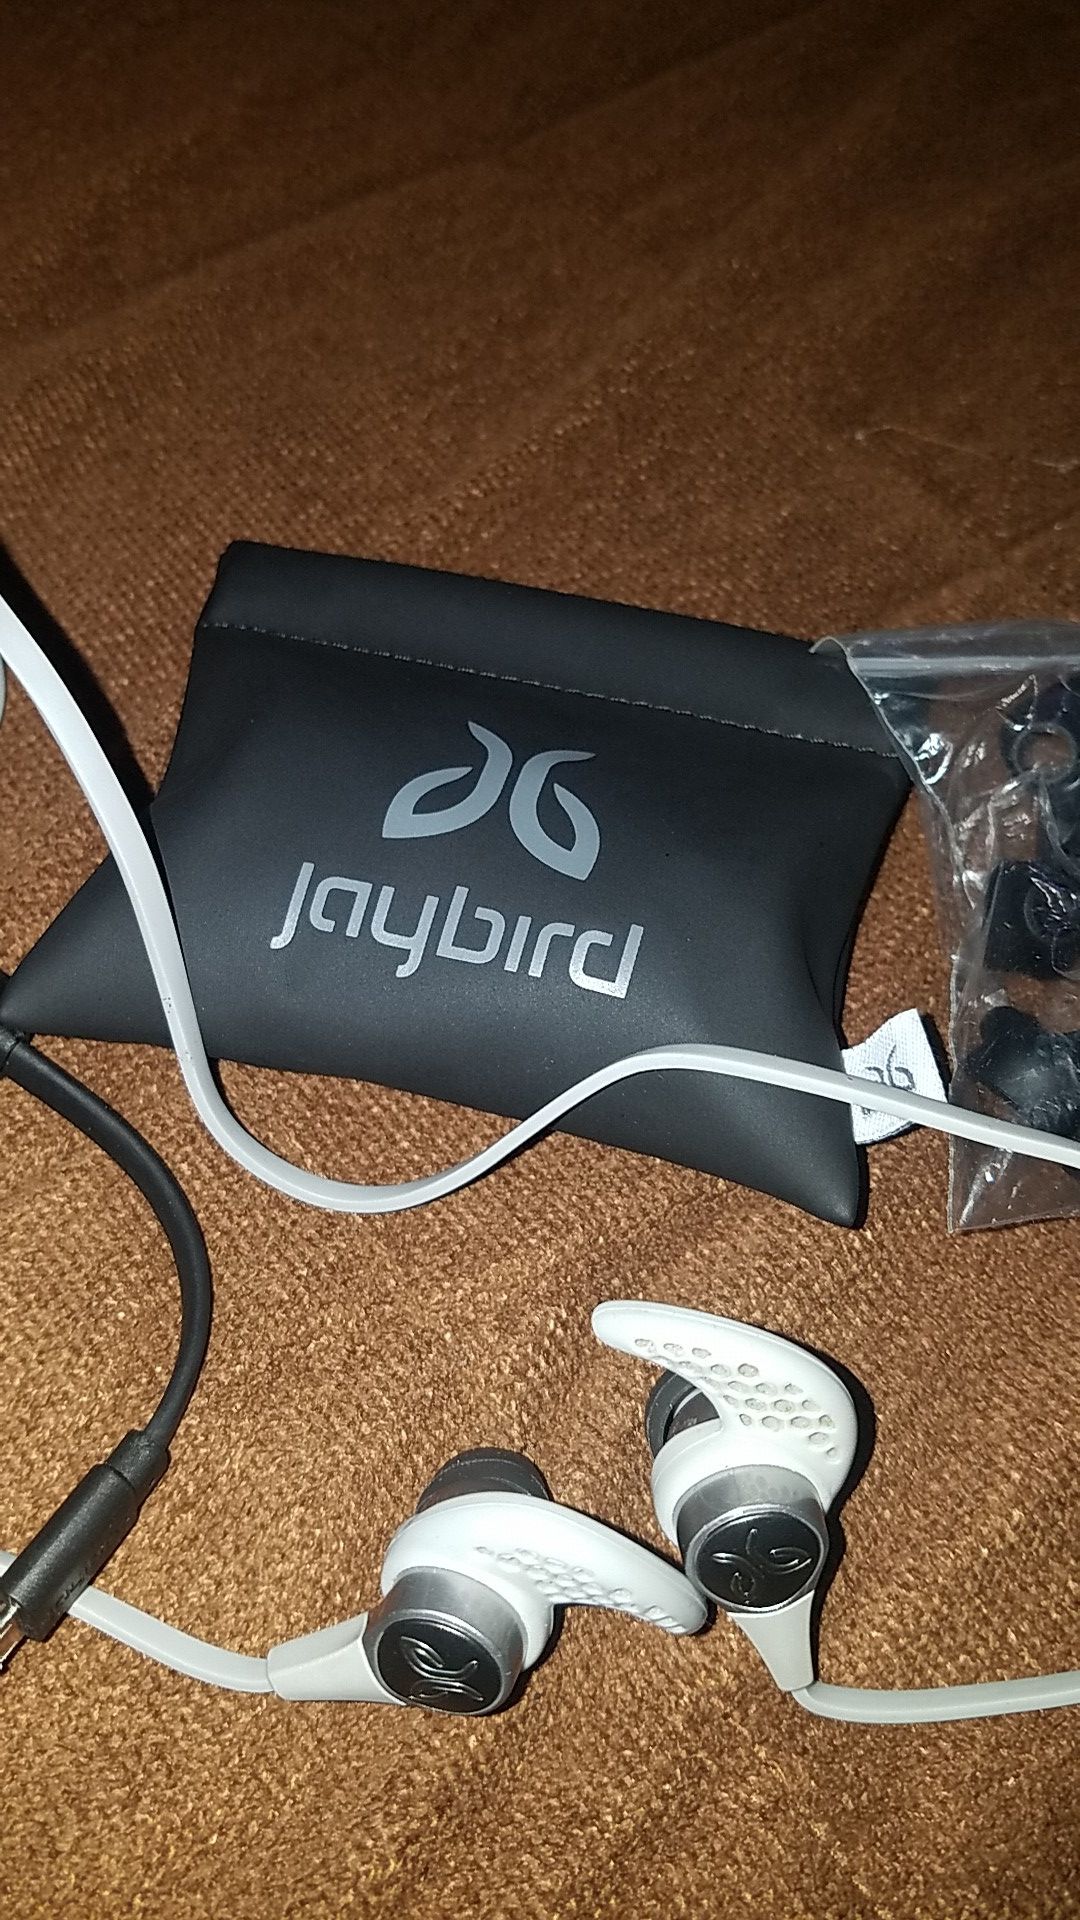 Jaybird earbuds